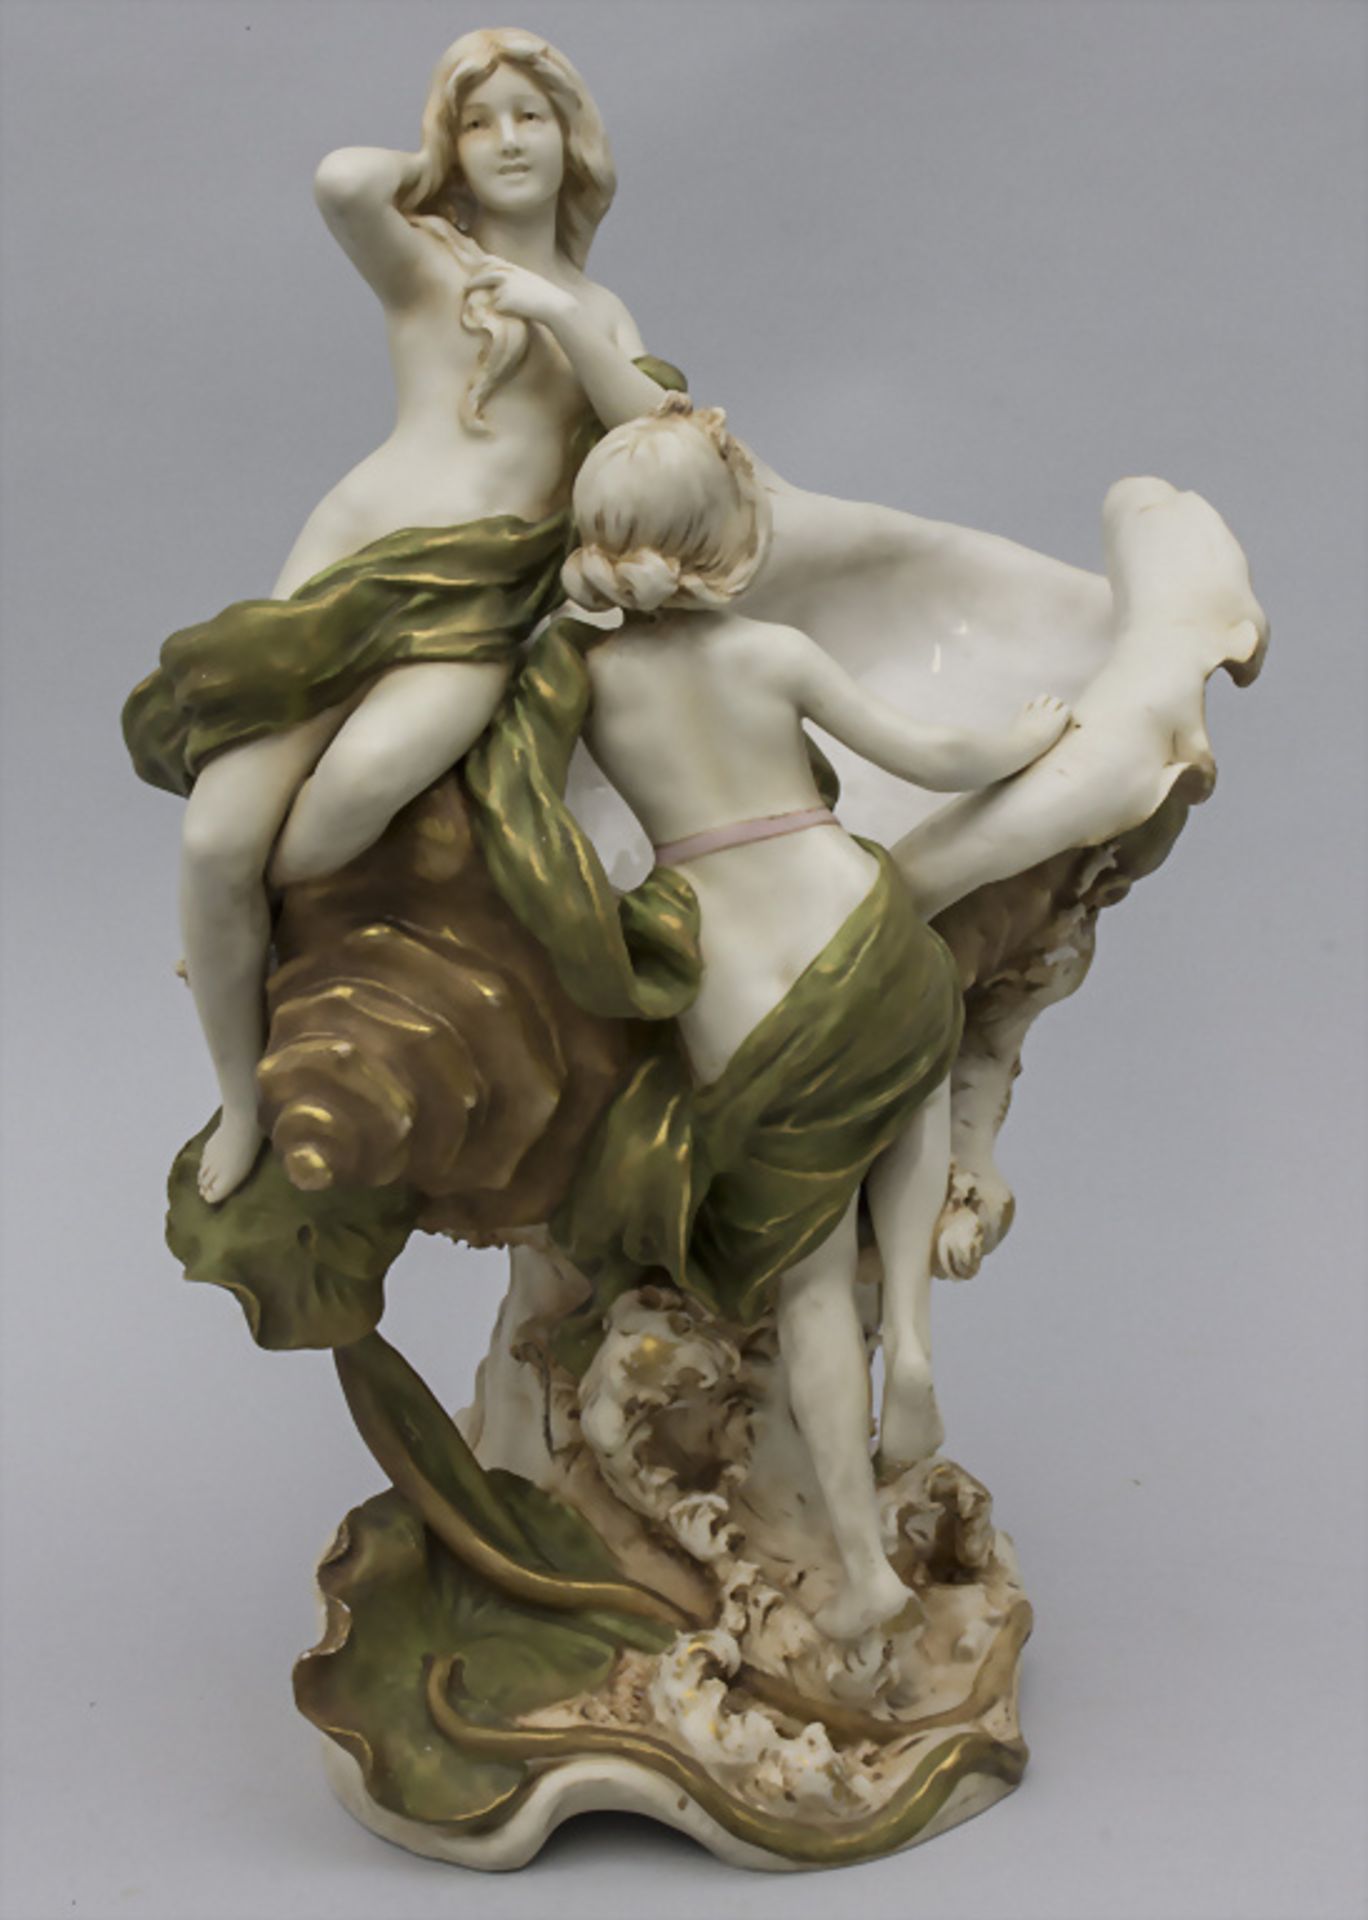 Jugendstil Porzellanskulptur / An Art Nouveau porcelain sculpture, Royal Dux Bohemia, um 1900